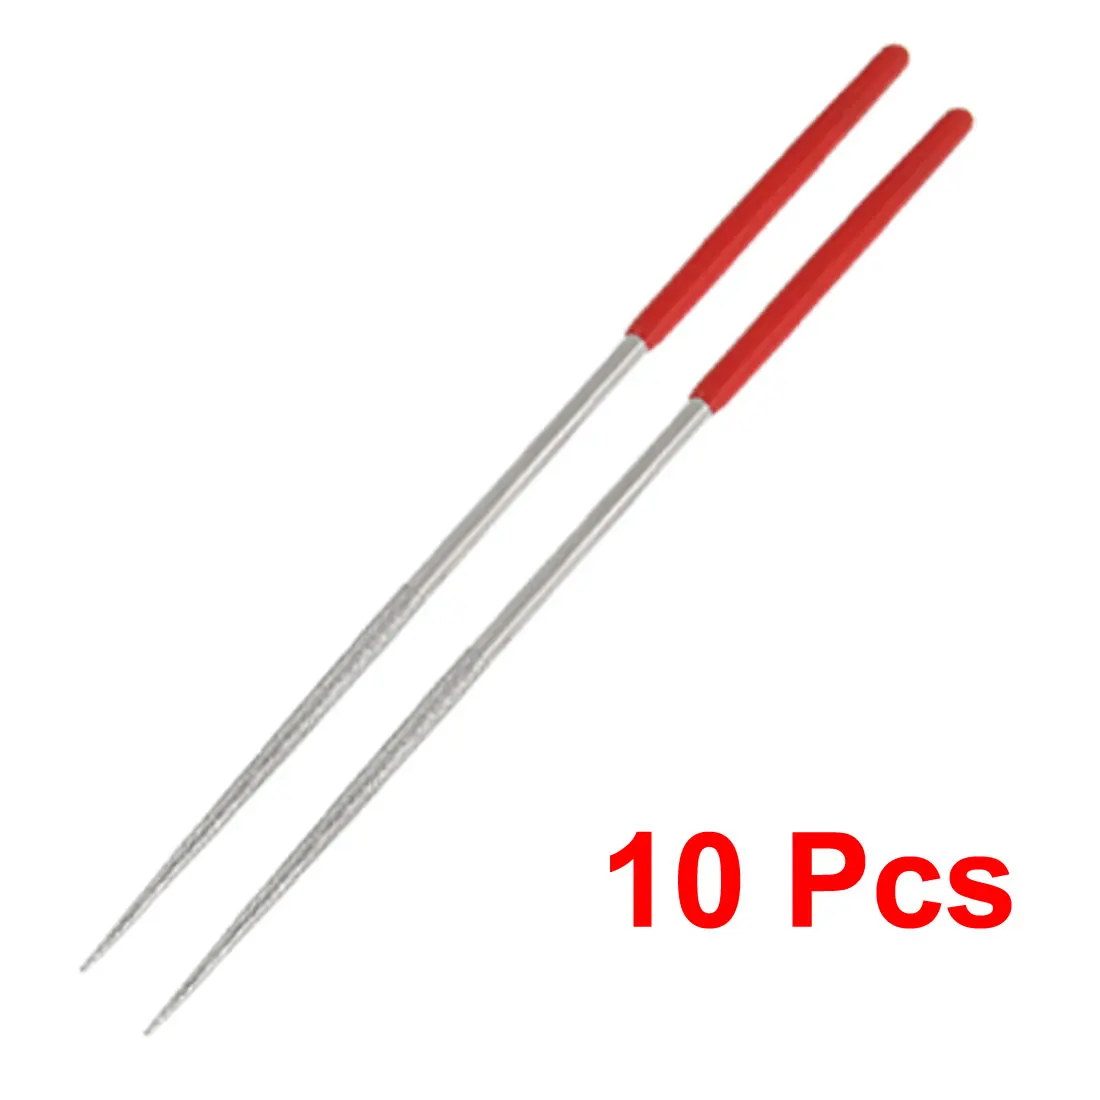 UXCELL красной ручкой гранильной ювелир круглый бриллиант надфили 10 шт. используемый, чтобы увеличить круглое отверстие или с зубчатым краем